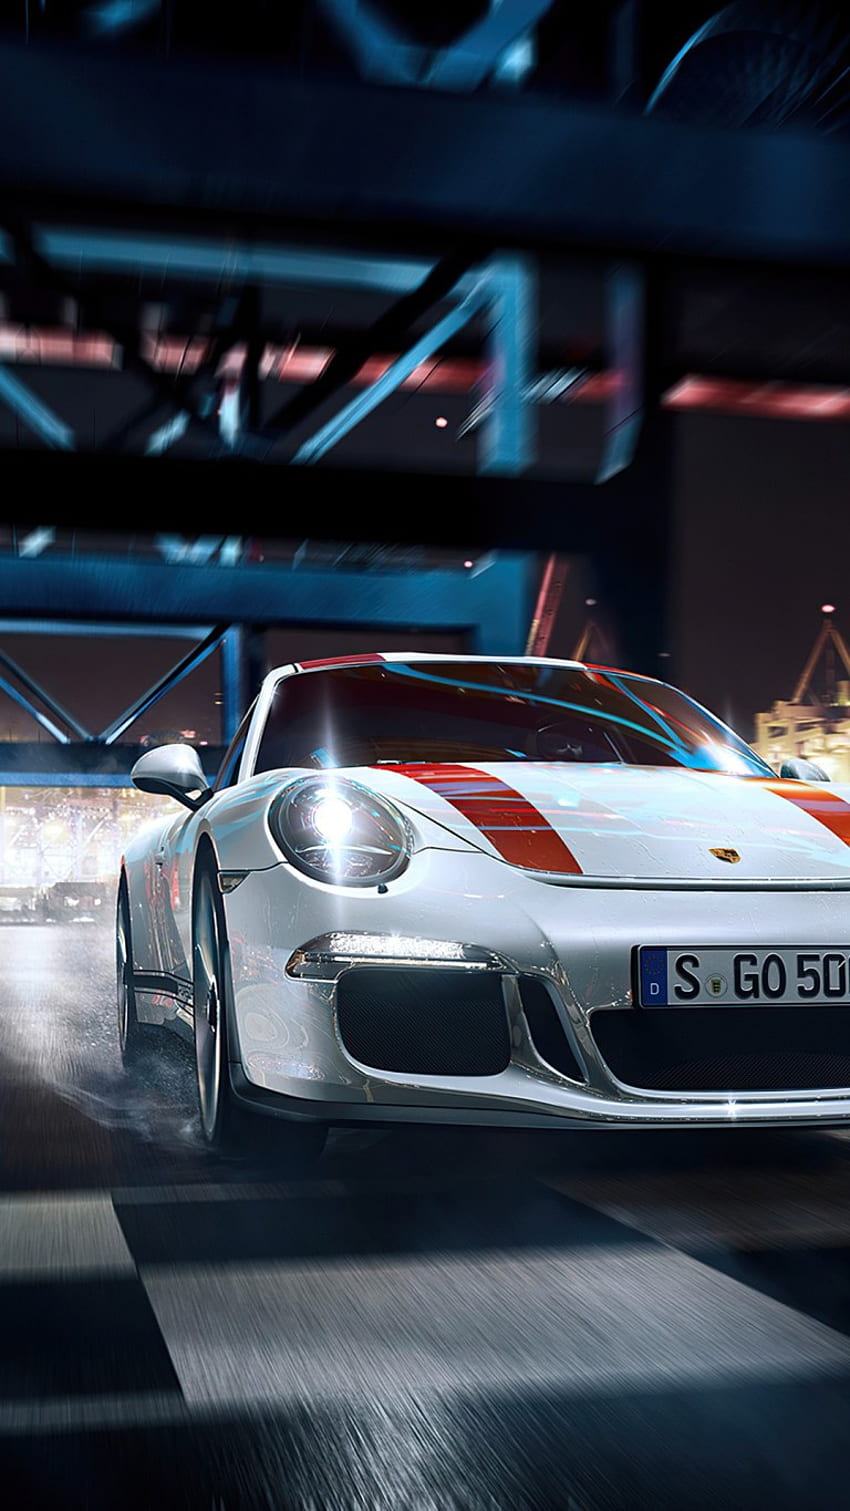 Hình nền iPhone đêm xe Porsche 911 Turbo S sẽ khiến bạn cảm thấy như đang ngồi trên chiếc xe siêu sang này trong đêm tối. Với ánh đèn tinh tế và vẻ đẹp lôi cuốn của dòng xe này, bạn sẽ không thể rời mắt khỏi màn hình điện thoại. Download ngay để trải nghiệm cảm giác thú vị này.